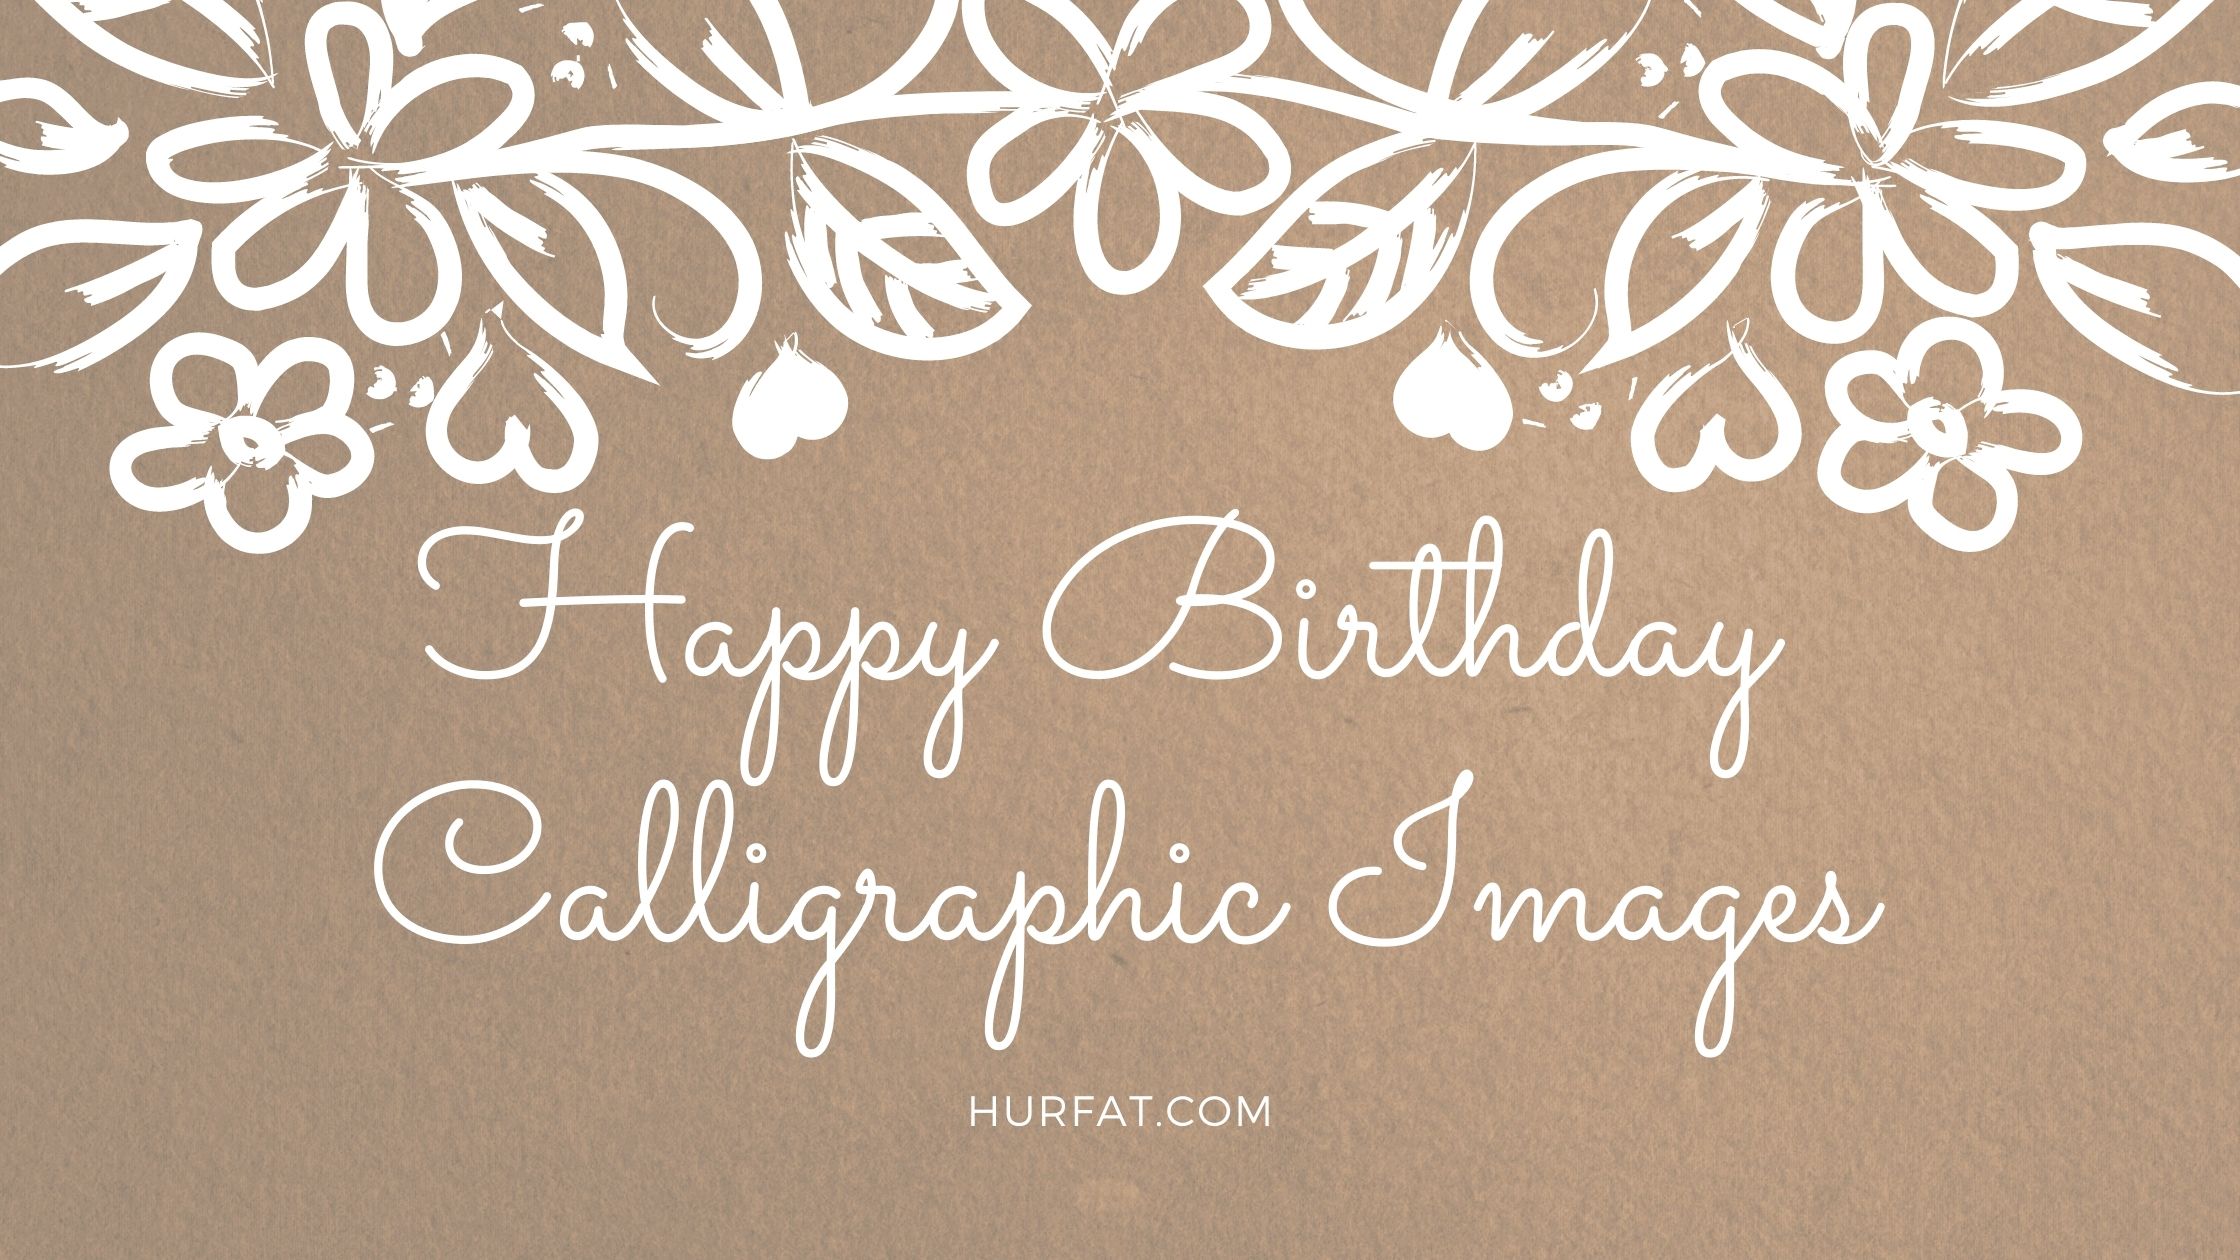 Happy Birthday Calligraphic Images.